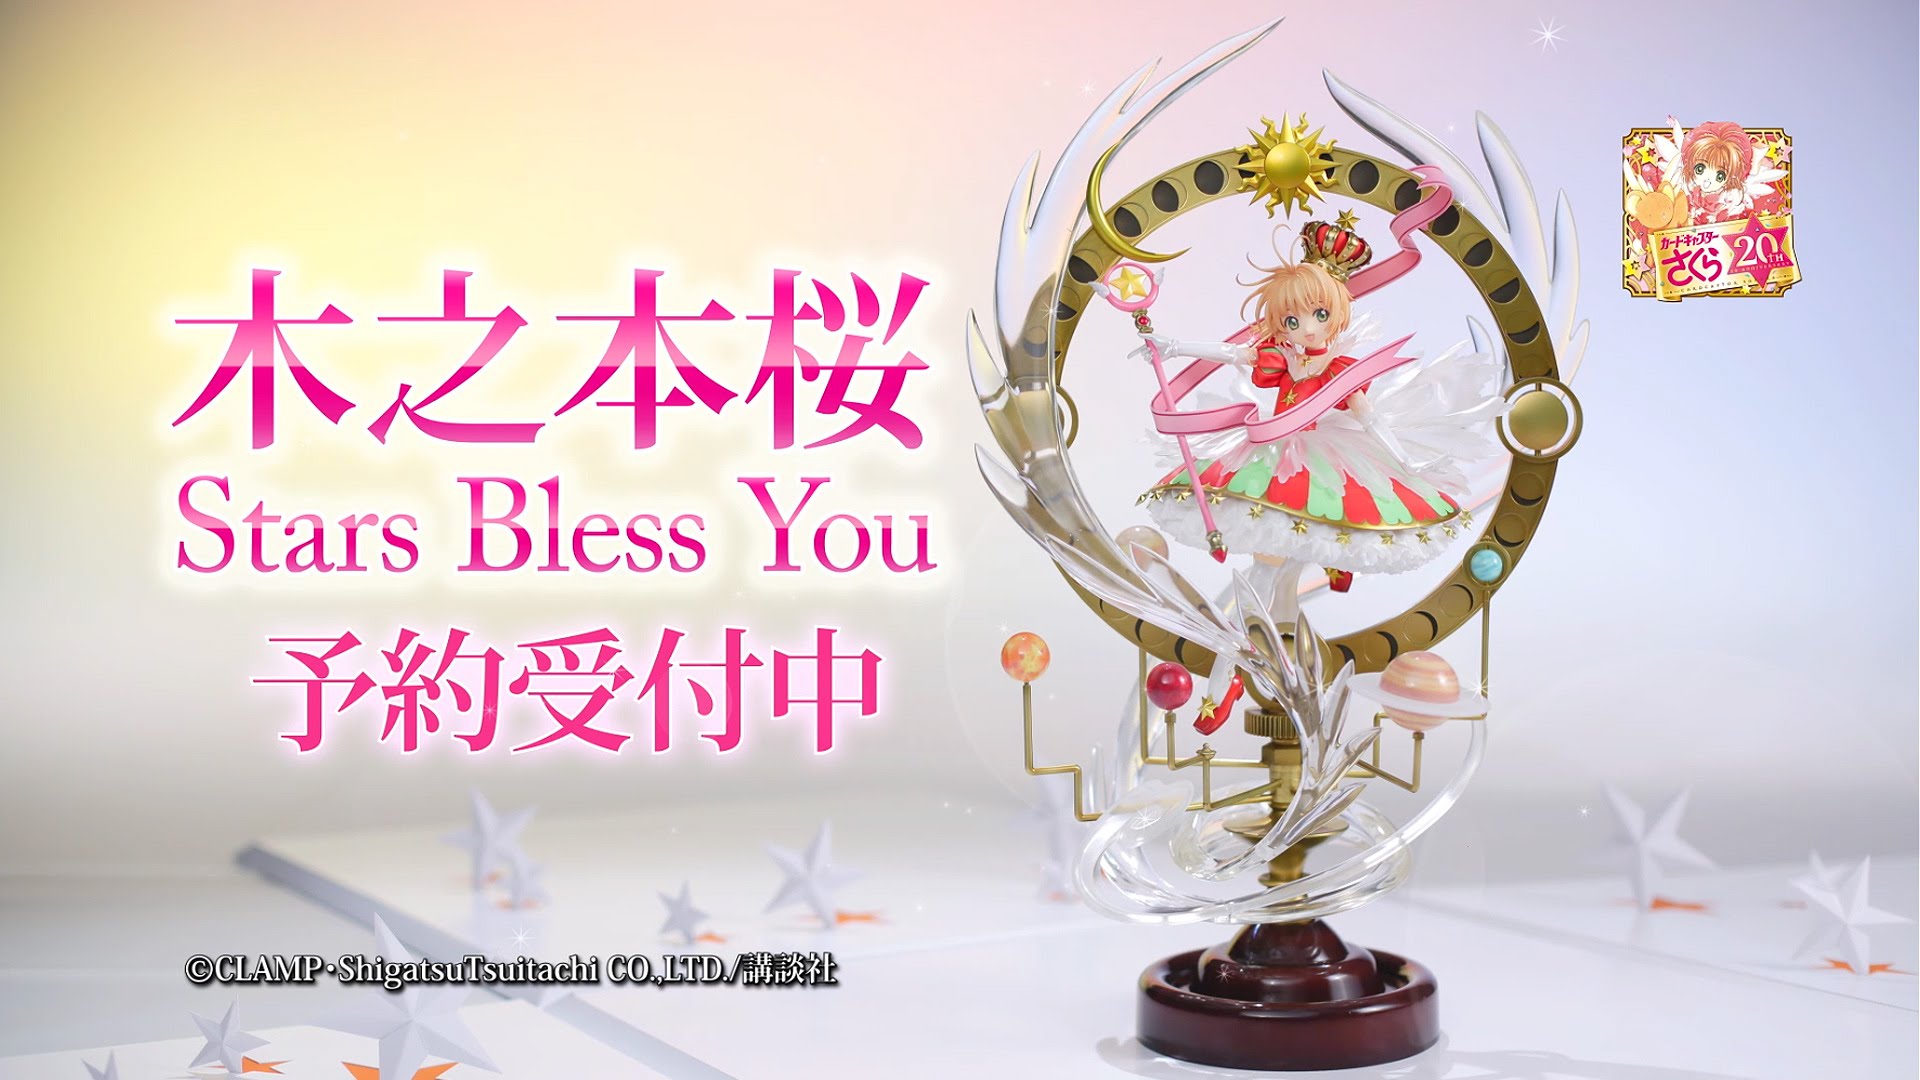 Her er en reklame video for Good Smile Companys kommende, utroligt flotte Cardcaptor Sakura "Stars Bless You" figur.